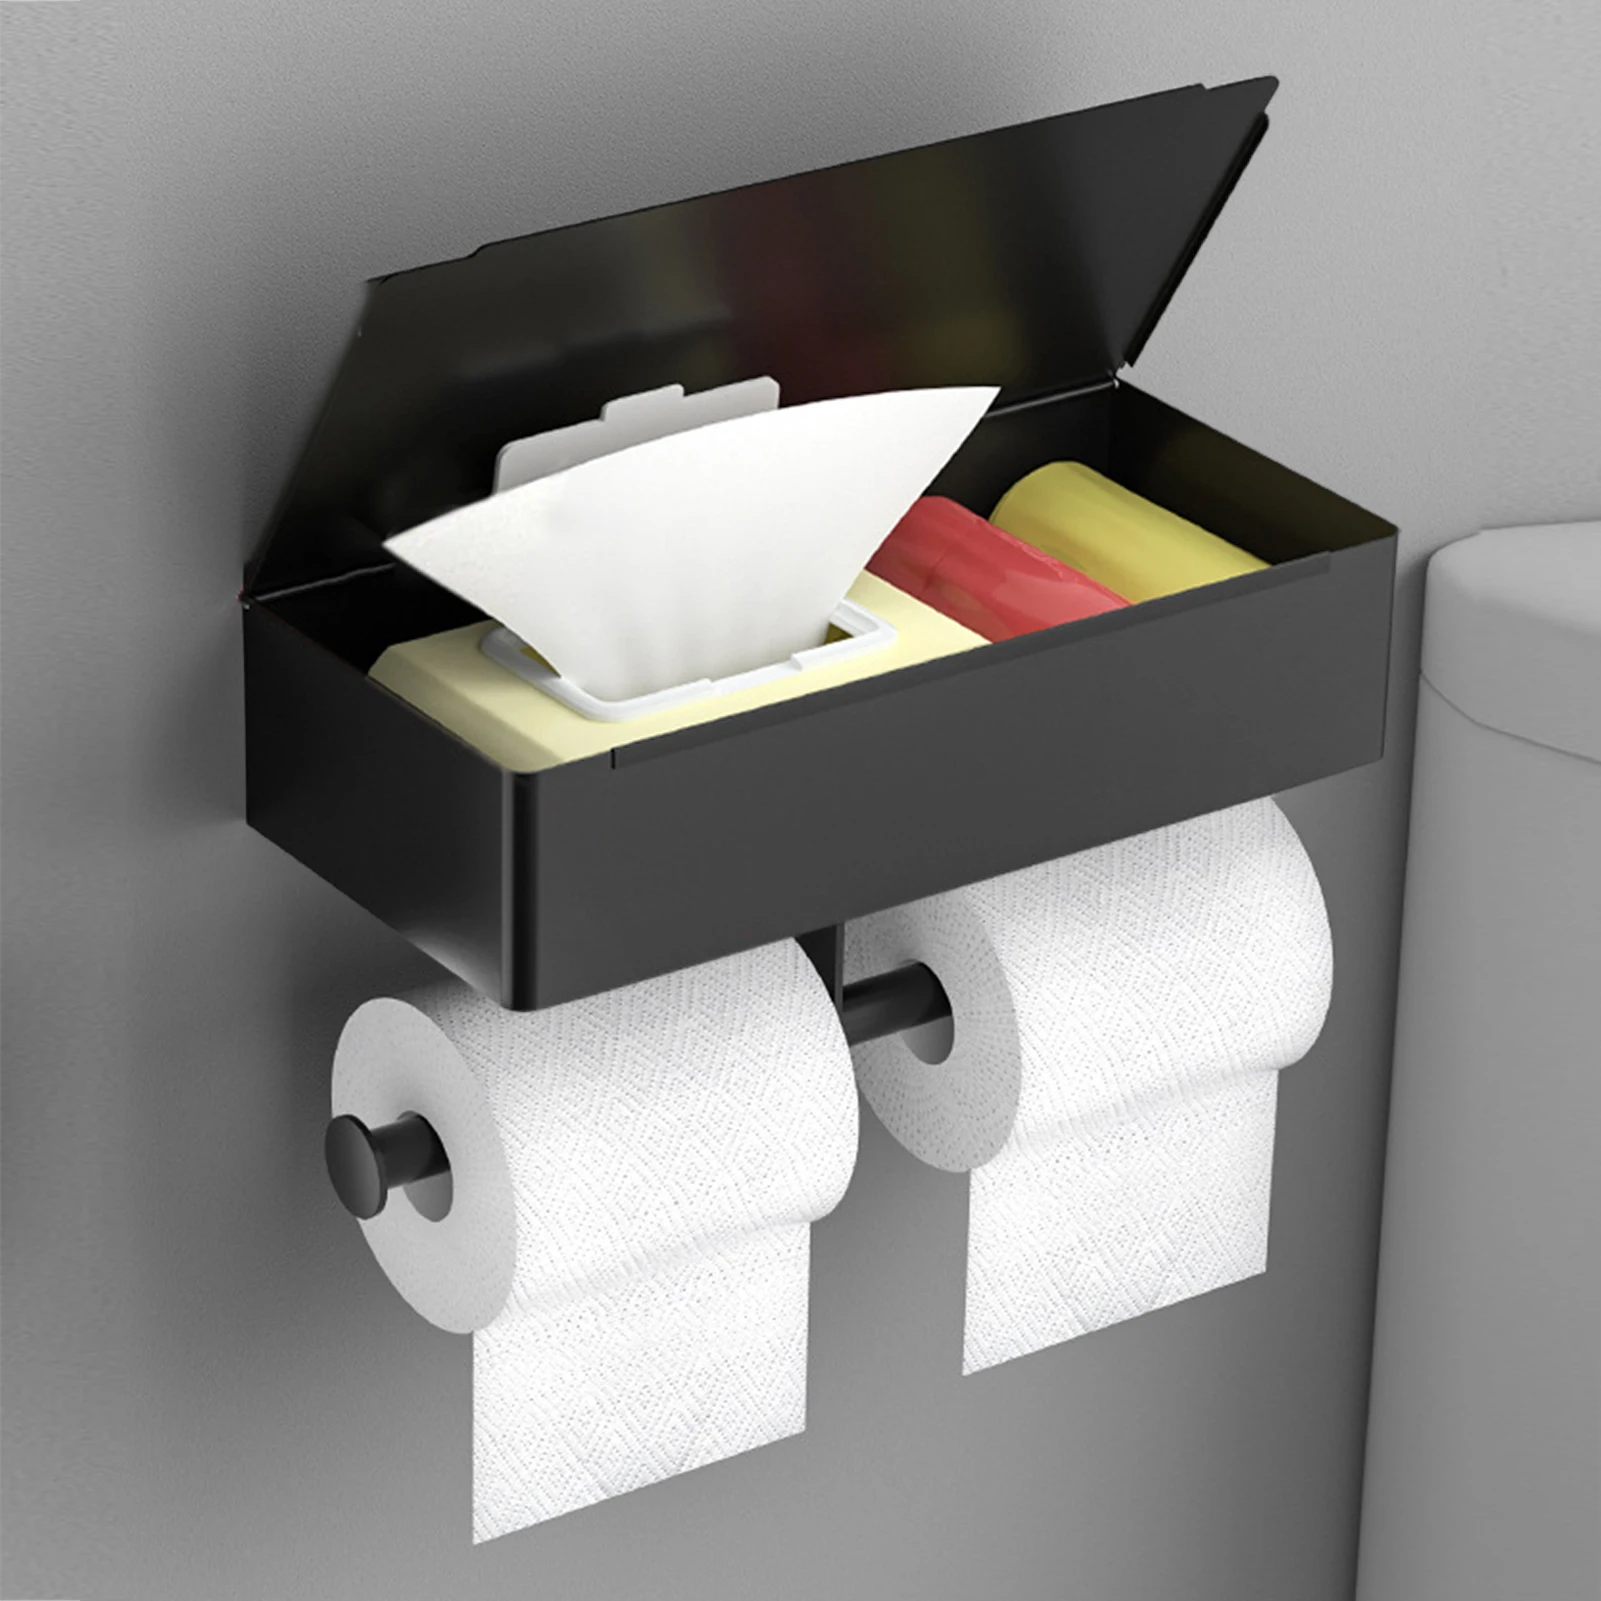 https://ae01.alicdn.com/kf/S86654e4755474617bdf80b054a6dc254v/Wall-Mount-Toilet-Paper-Holder-Bathroom-Accessories-Tissue-Dispenser-Wipes-Storage-Box-Roll-Paper-Shelf-Organizer.jpg